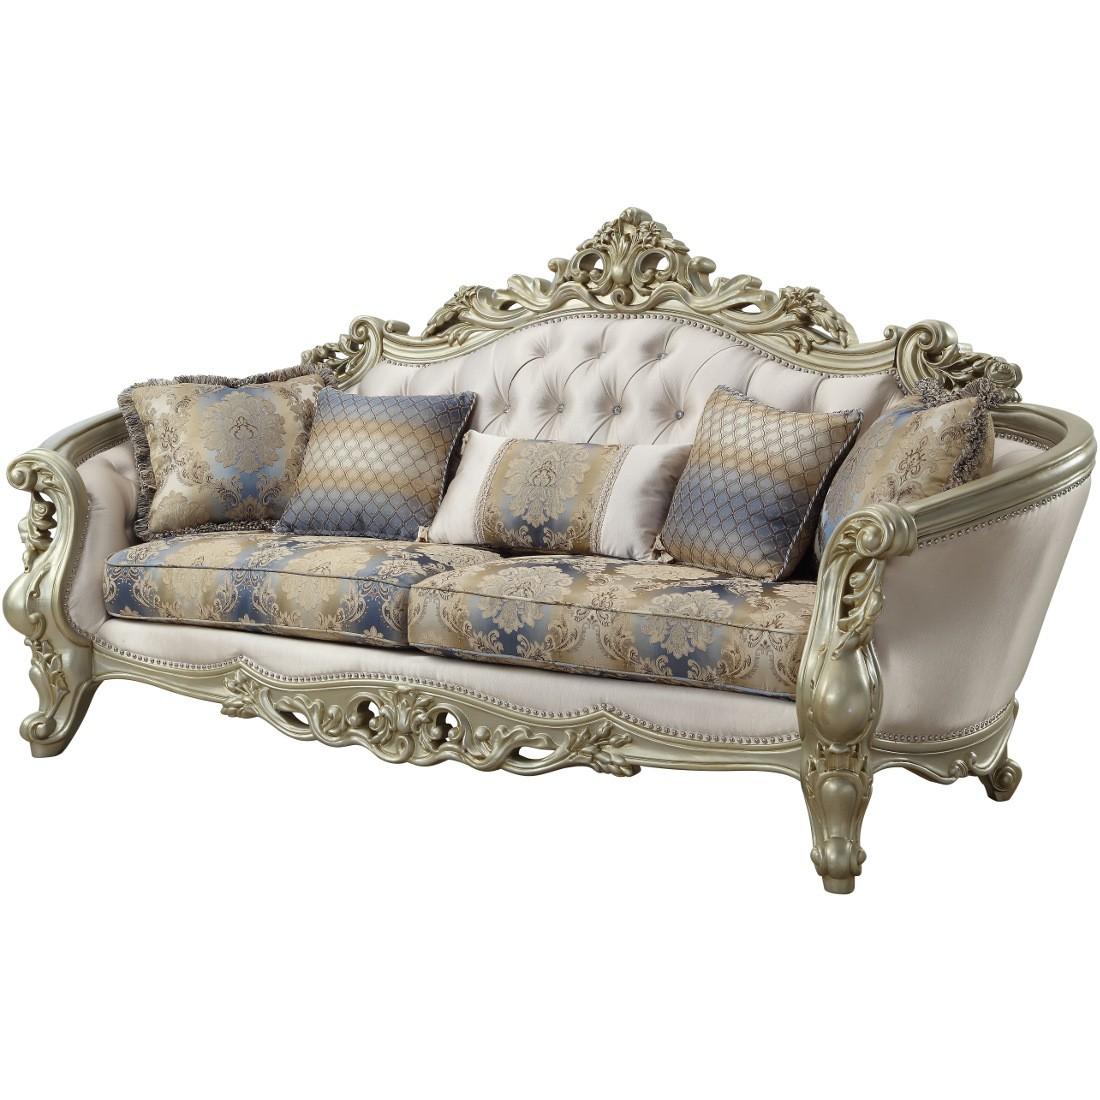 

    
Luxury Sofa Set 4 Pcs Gorsedd-52440 Antique White Cream Fabric Acme Traditional
